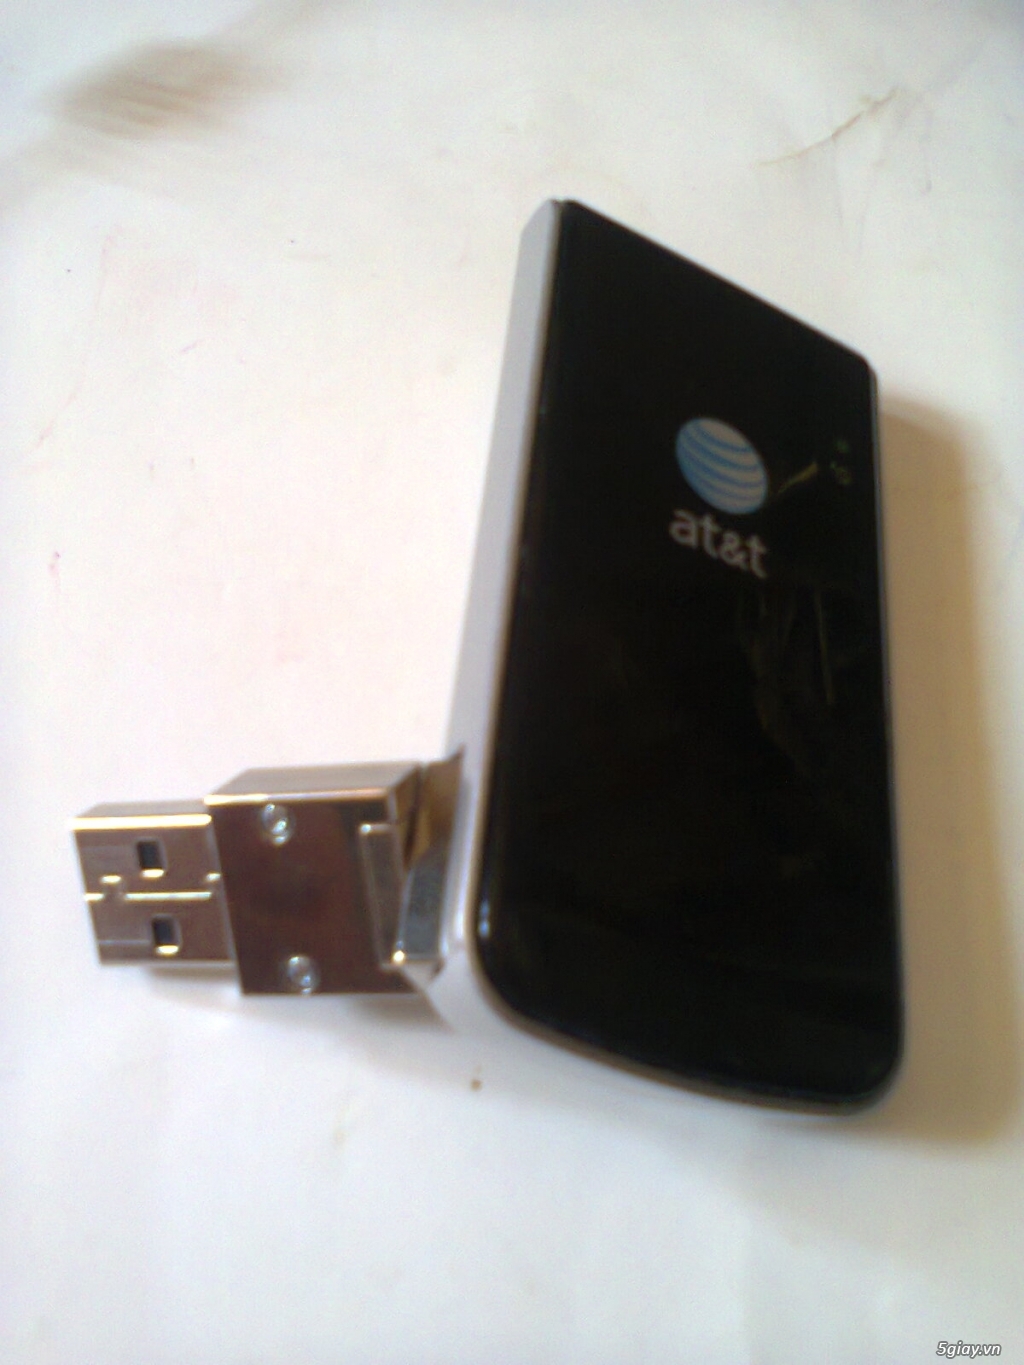 USB 3g USA at&t sierra wireless 313U